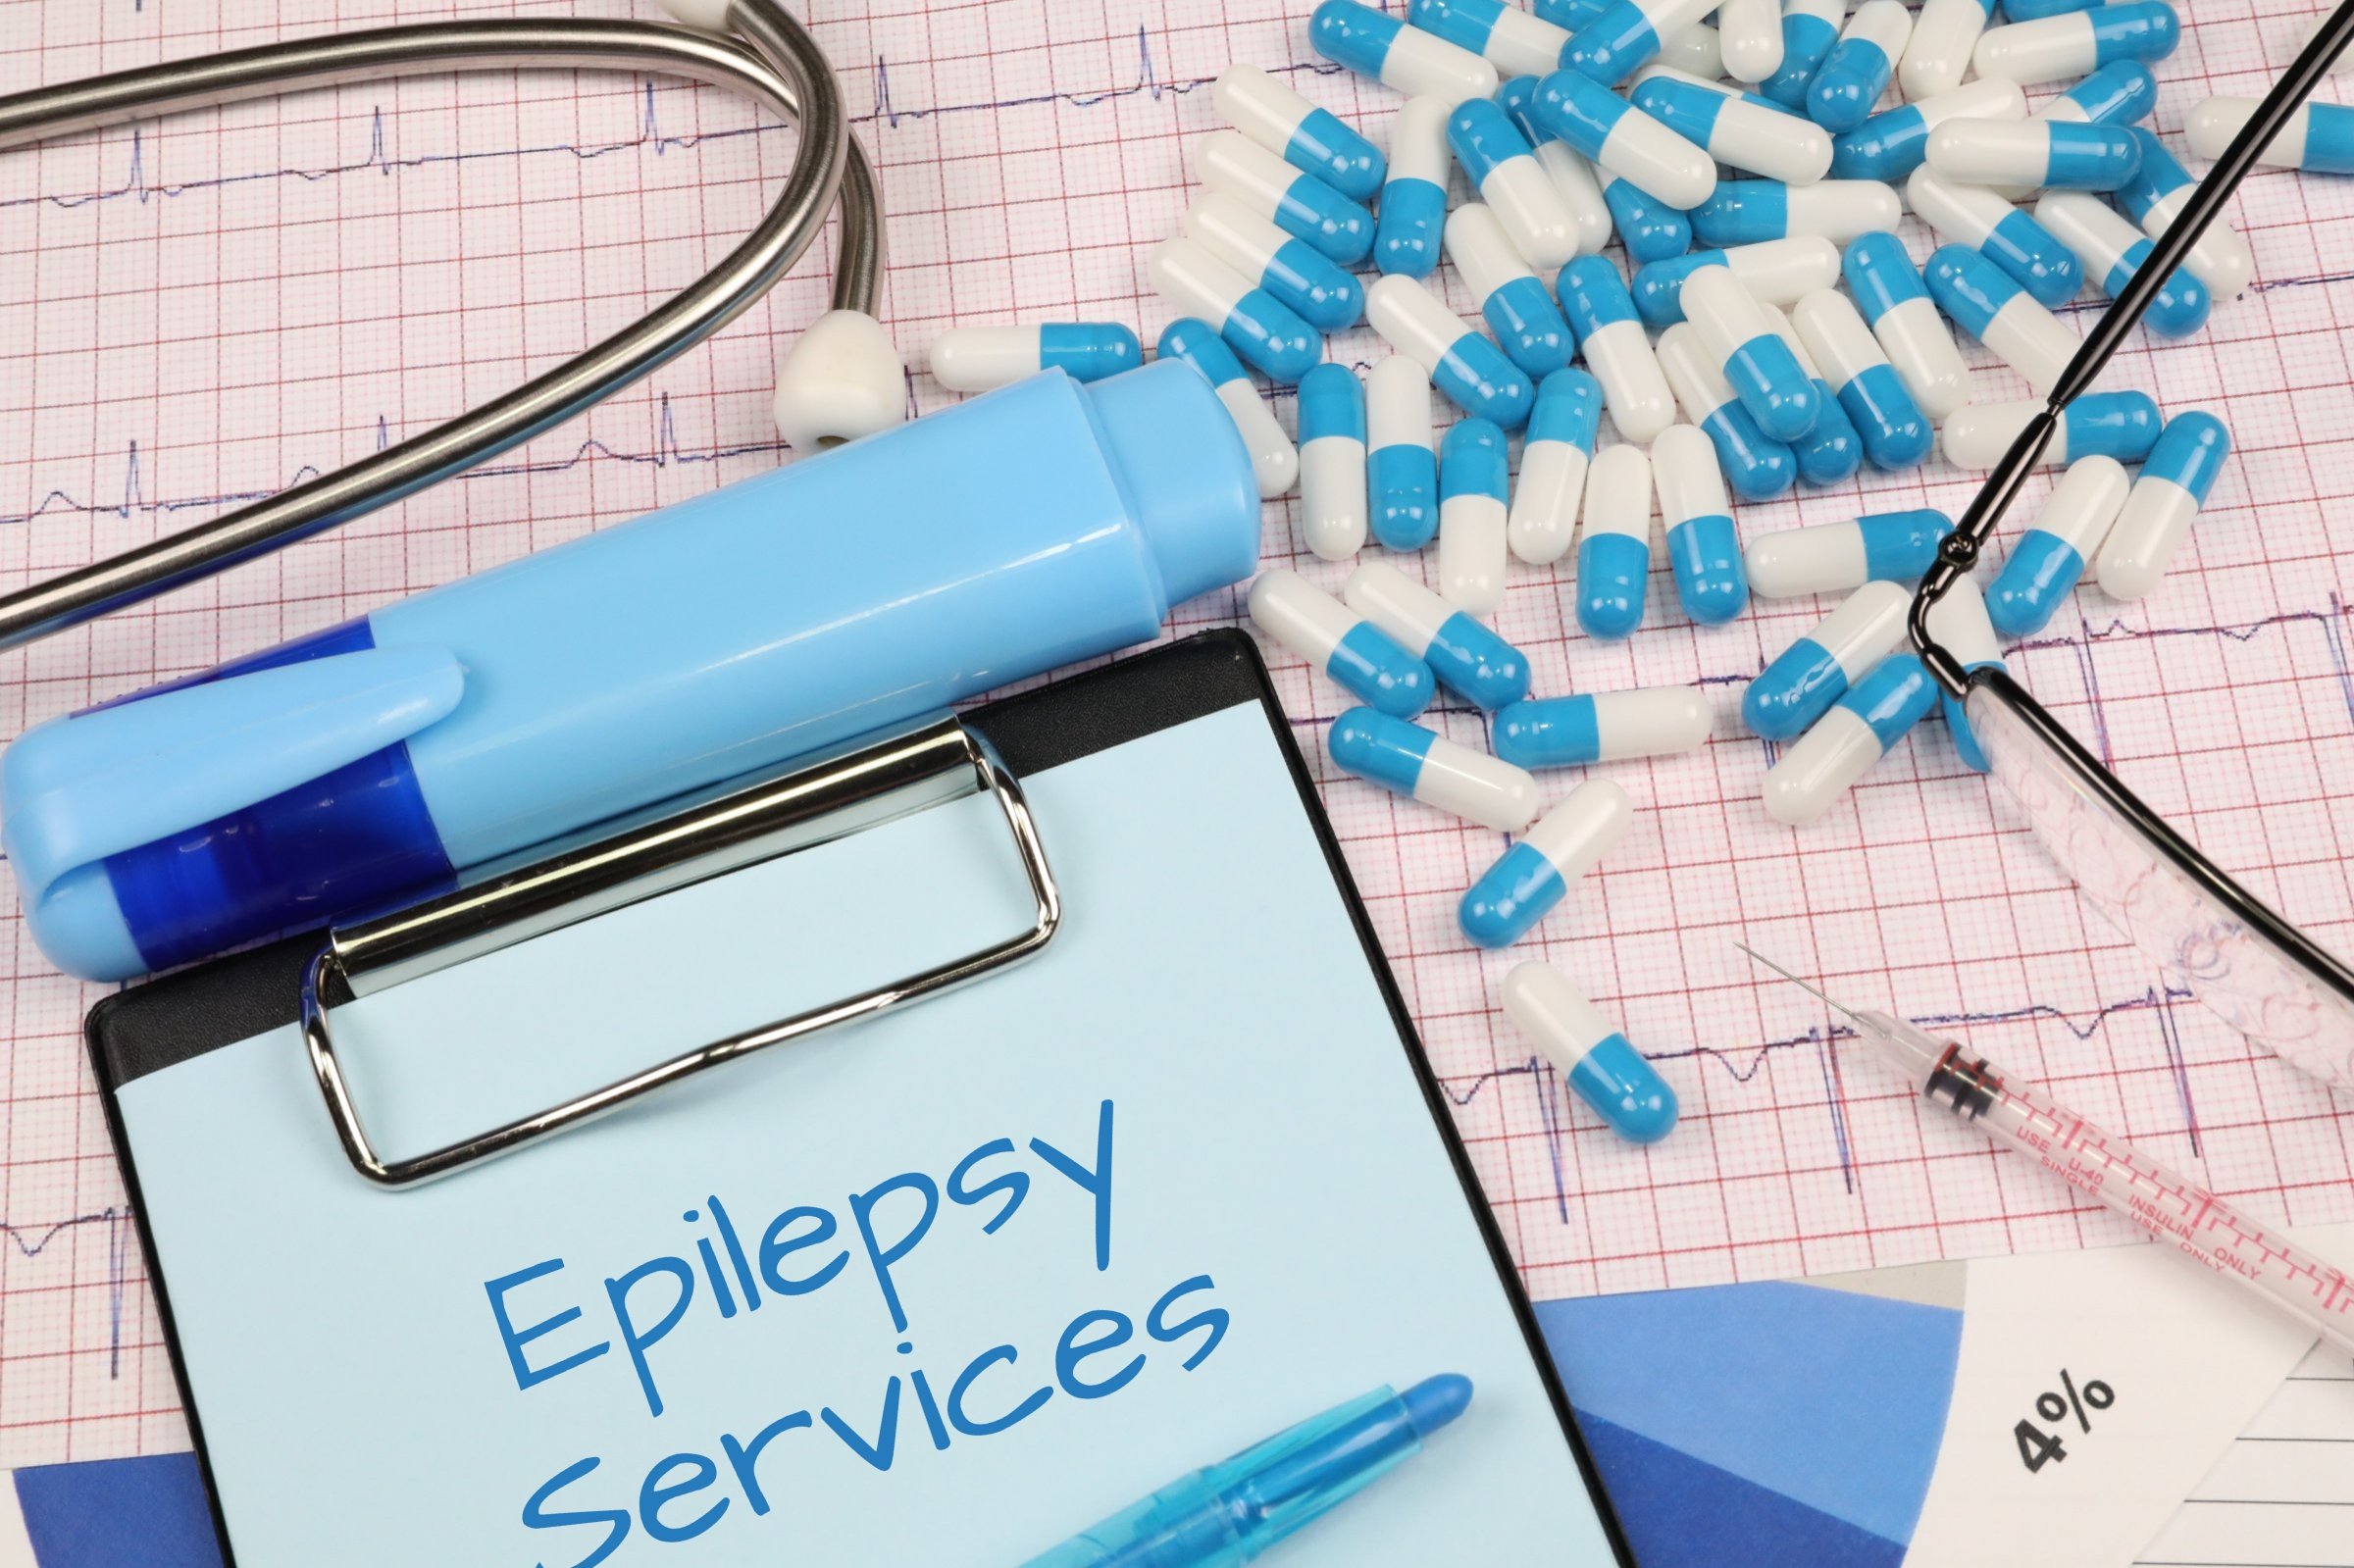 epilepsy services